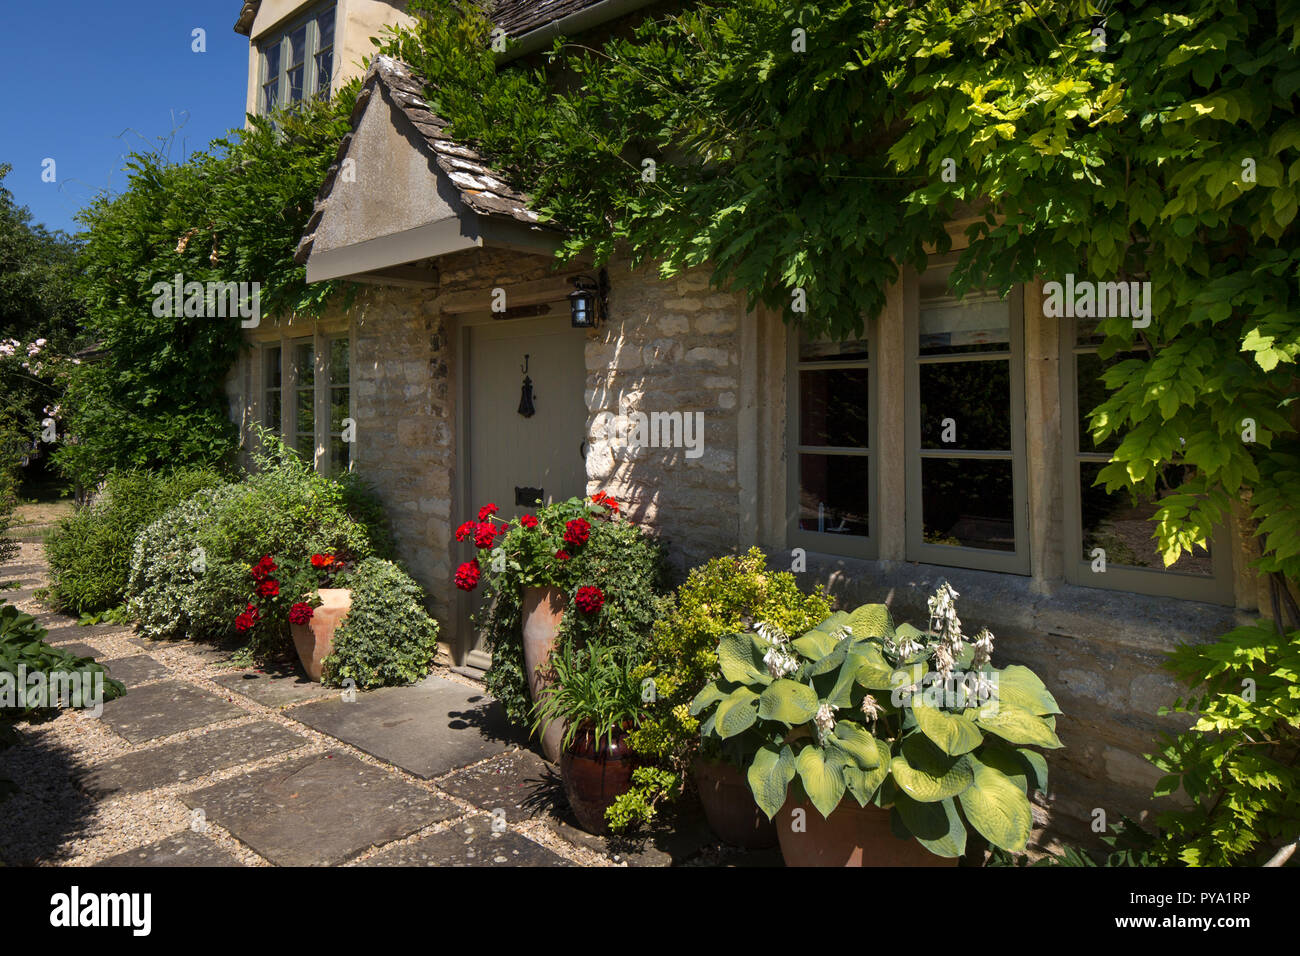 Porte avant de cottage en anglais avec le Jardin des glycines et des pots de roses et d'hostas,Angleterre,Europe Banque D'Images